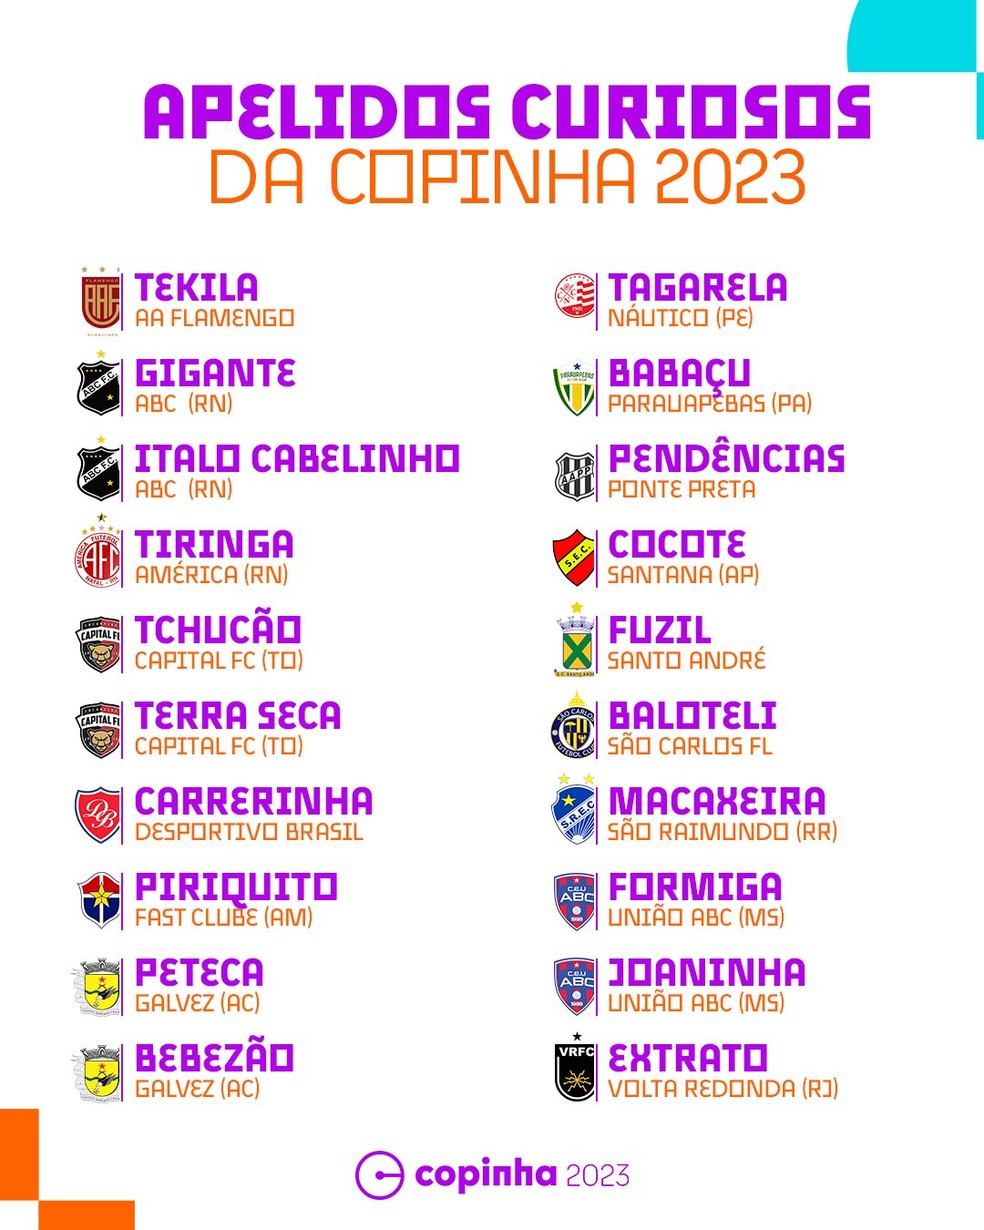 Kakaroto, Mimbape, Maradona, Tekila veja os apelidos mais curiosos da  Copinha de 2023, futebol